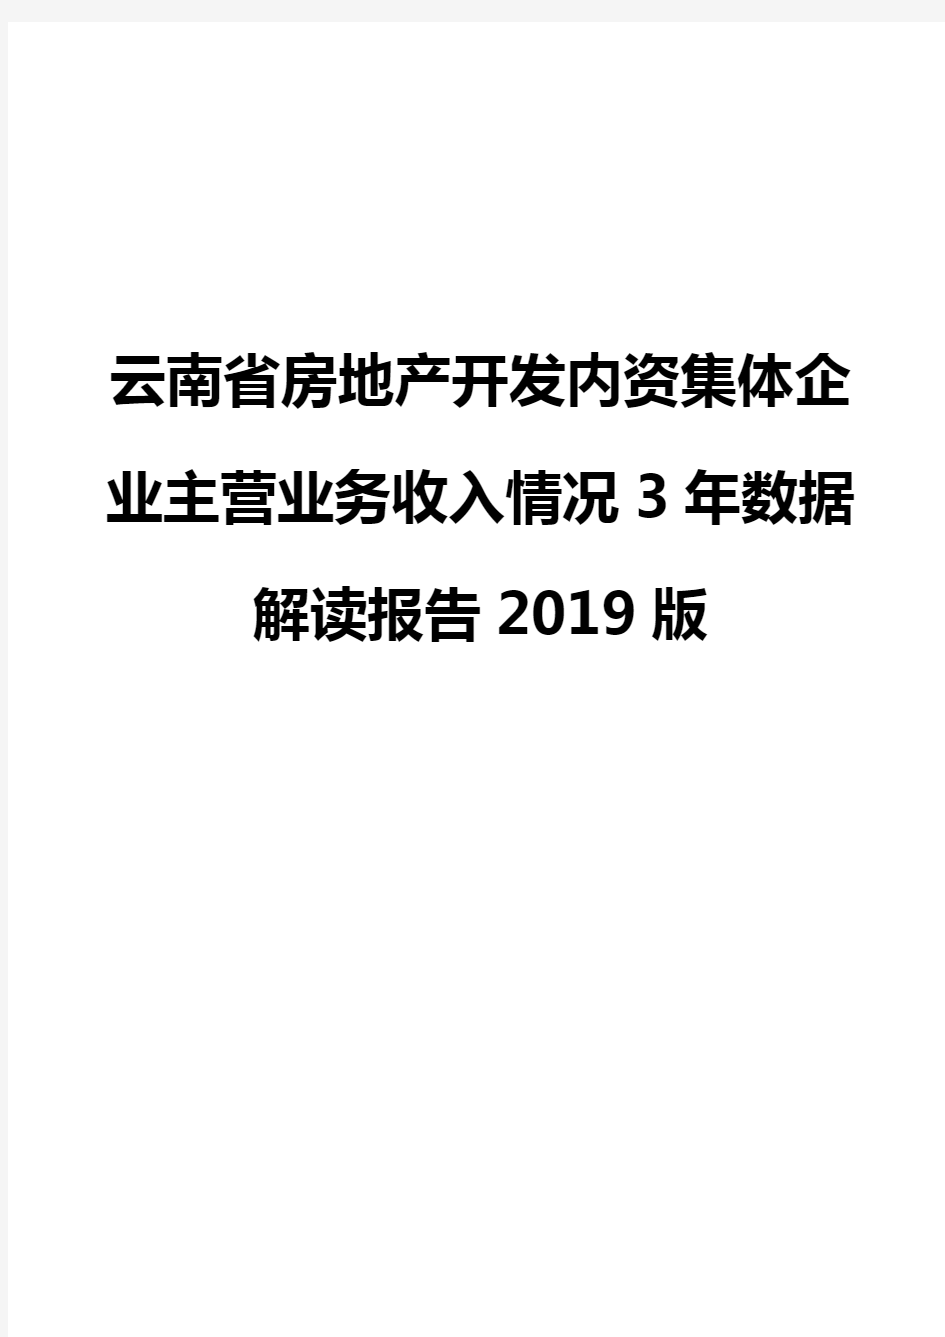 云南省房地产开发内资集体企业主营业务收入情况3年数据解读报告2019版